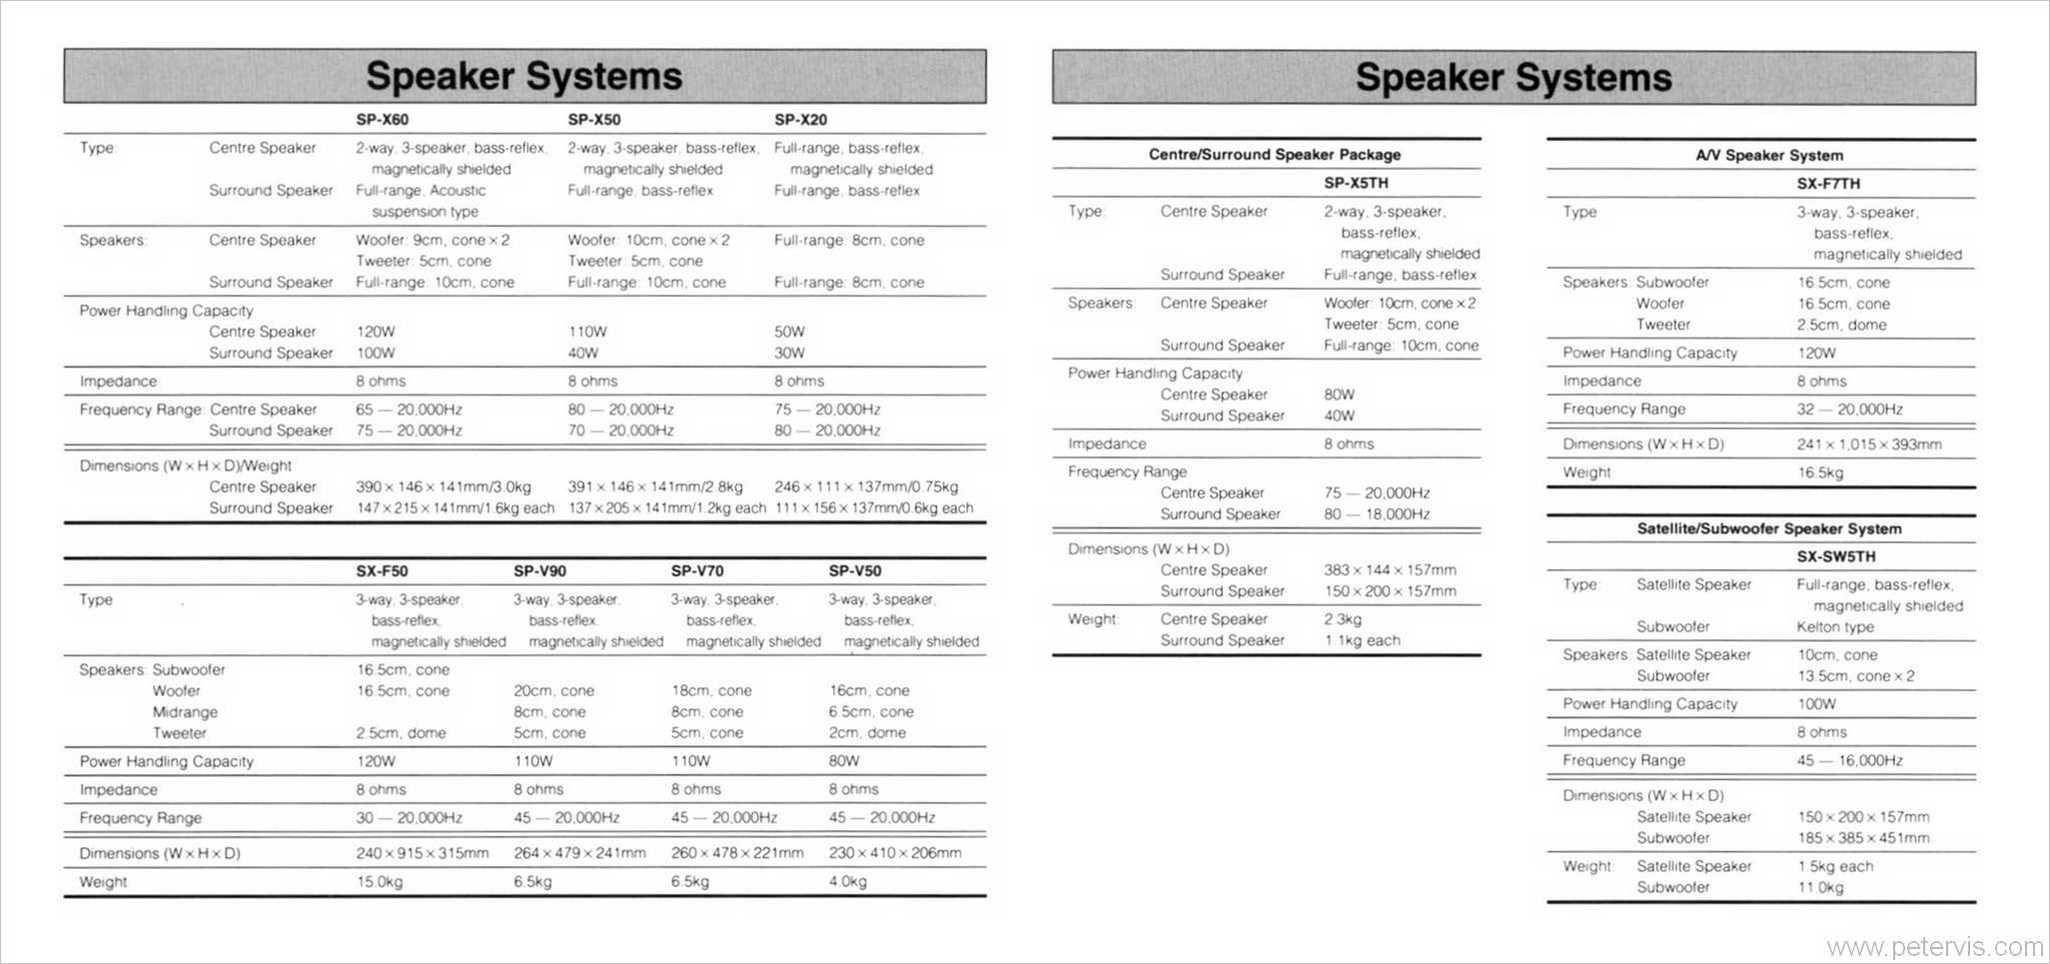 SPEAKER SYSTEMS SPECS